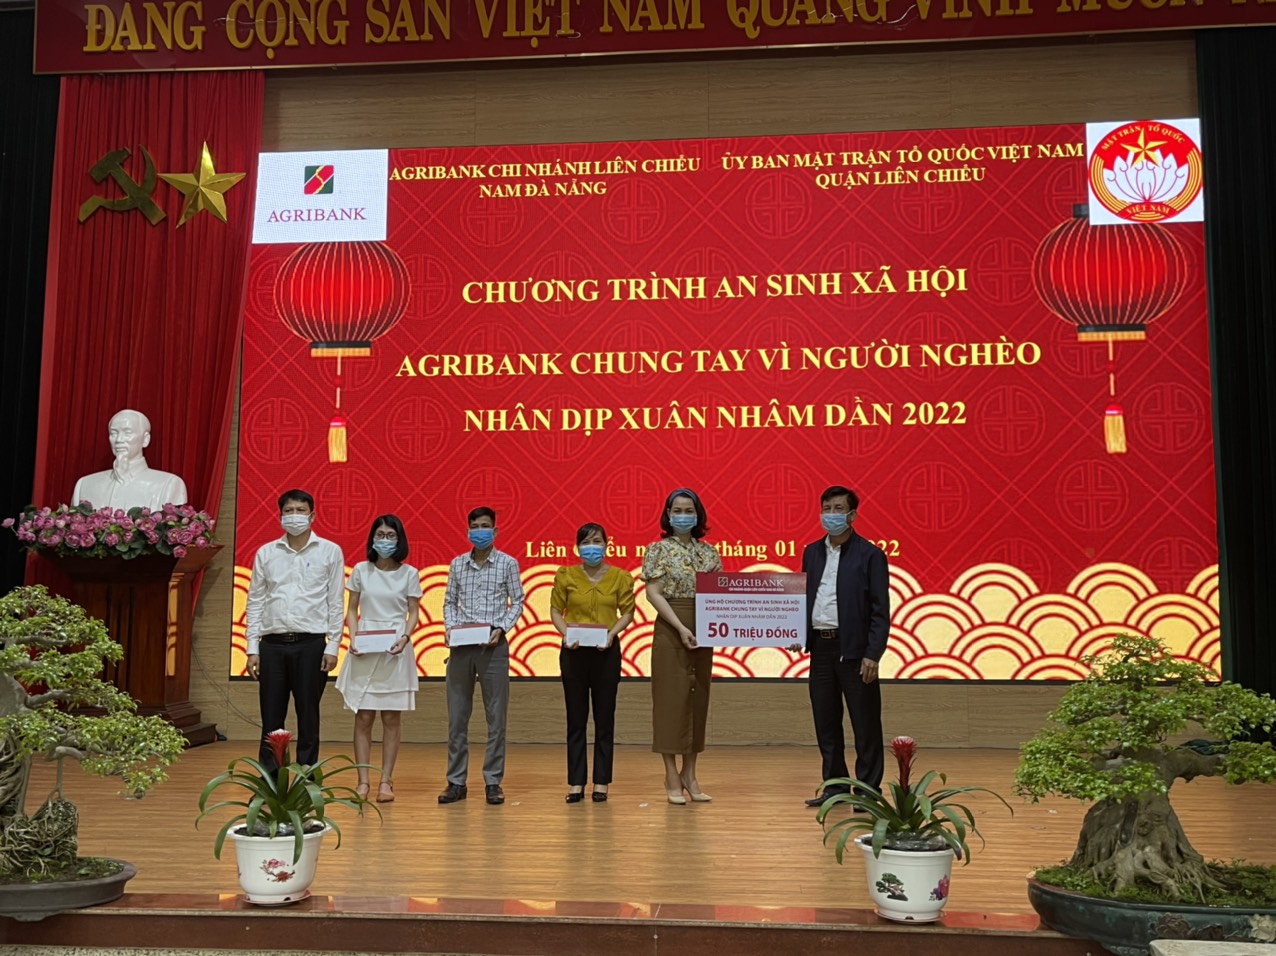 Đà Nẵng: Agribank Liên Chiểu đồng hành cùng công tác an sinh xã hội - Ảnh 1.